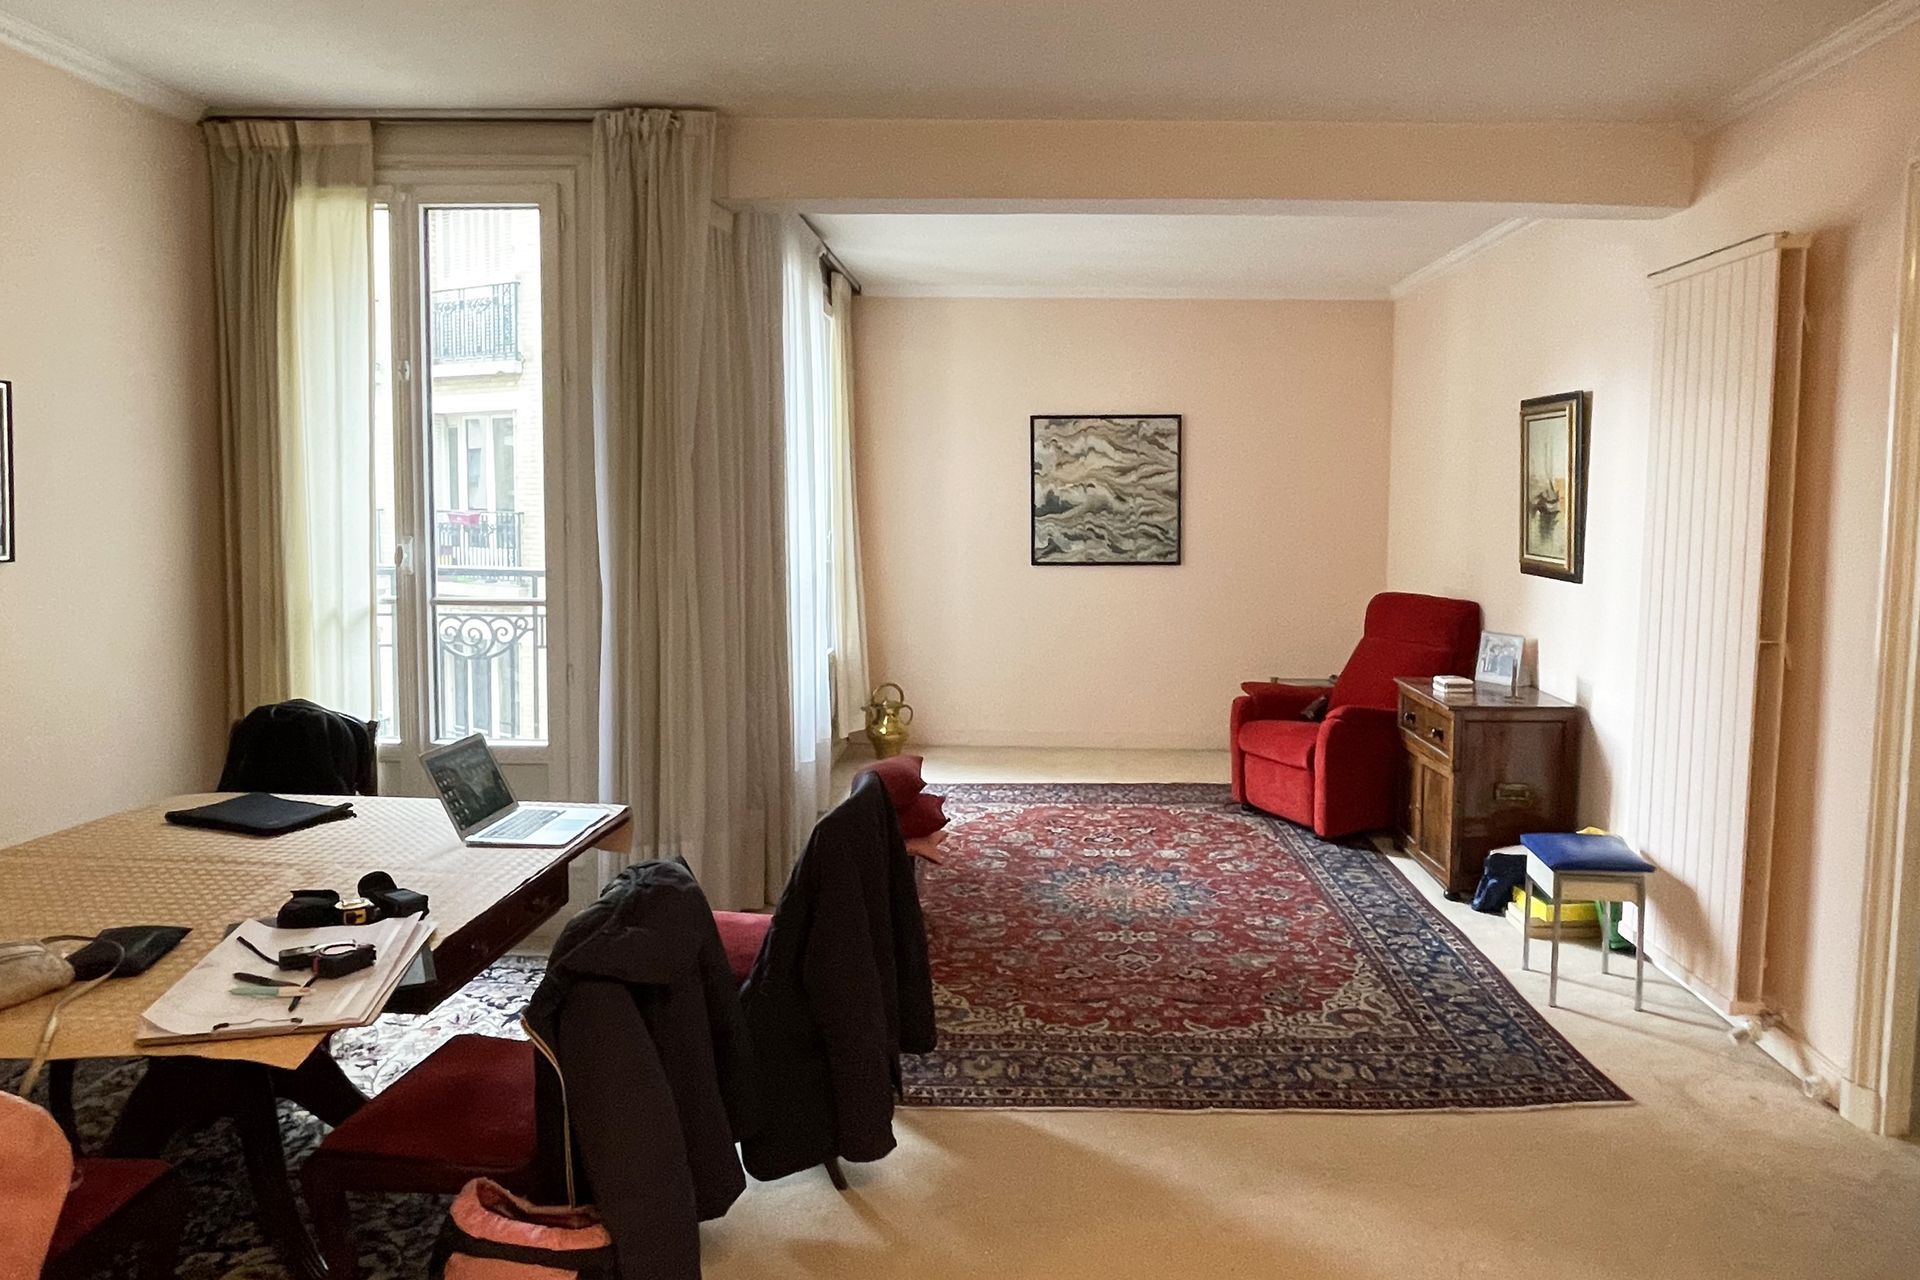 AXIOME Interior Design, architecte d'intérieur paris, haussmannien,  salon, cuisine, avant après